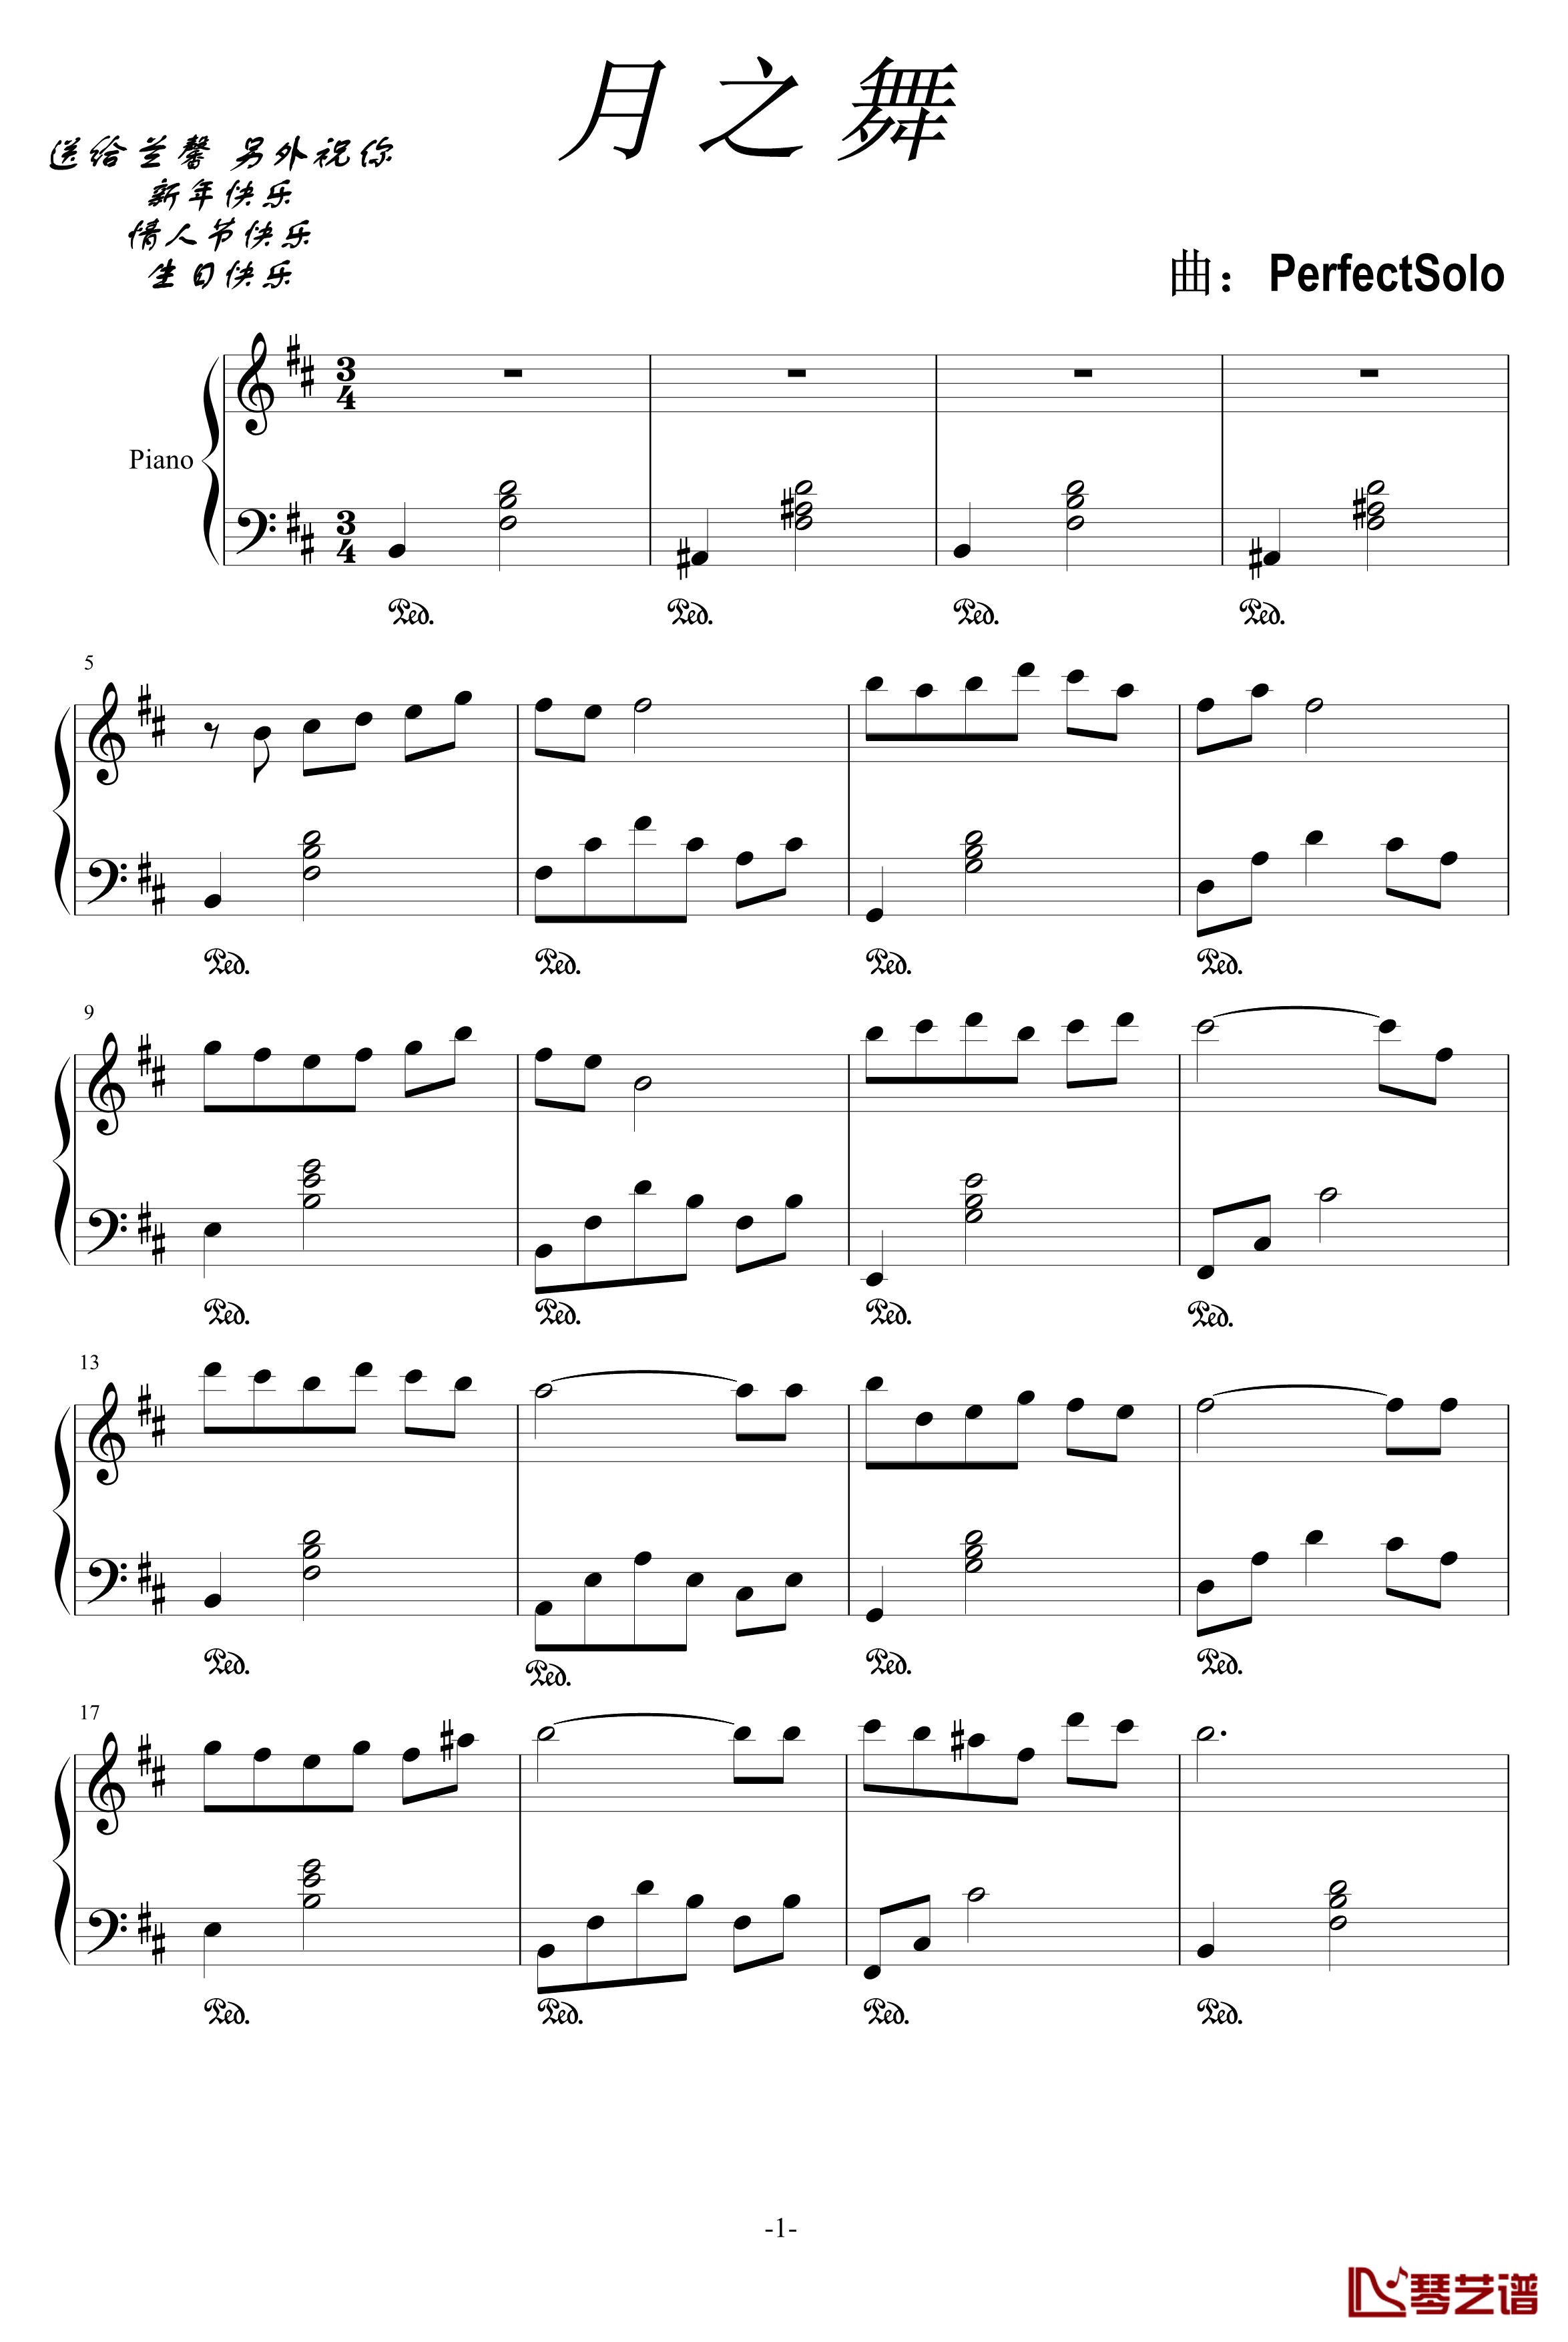 月之舞钢琴谱-PerfectSolo1